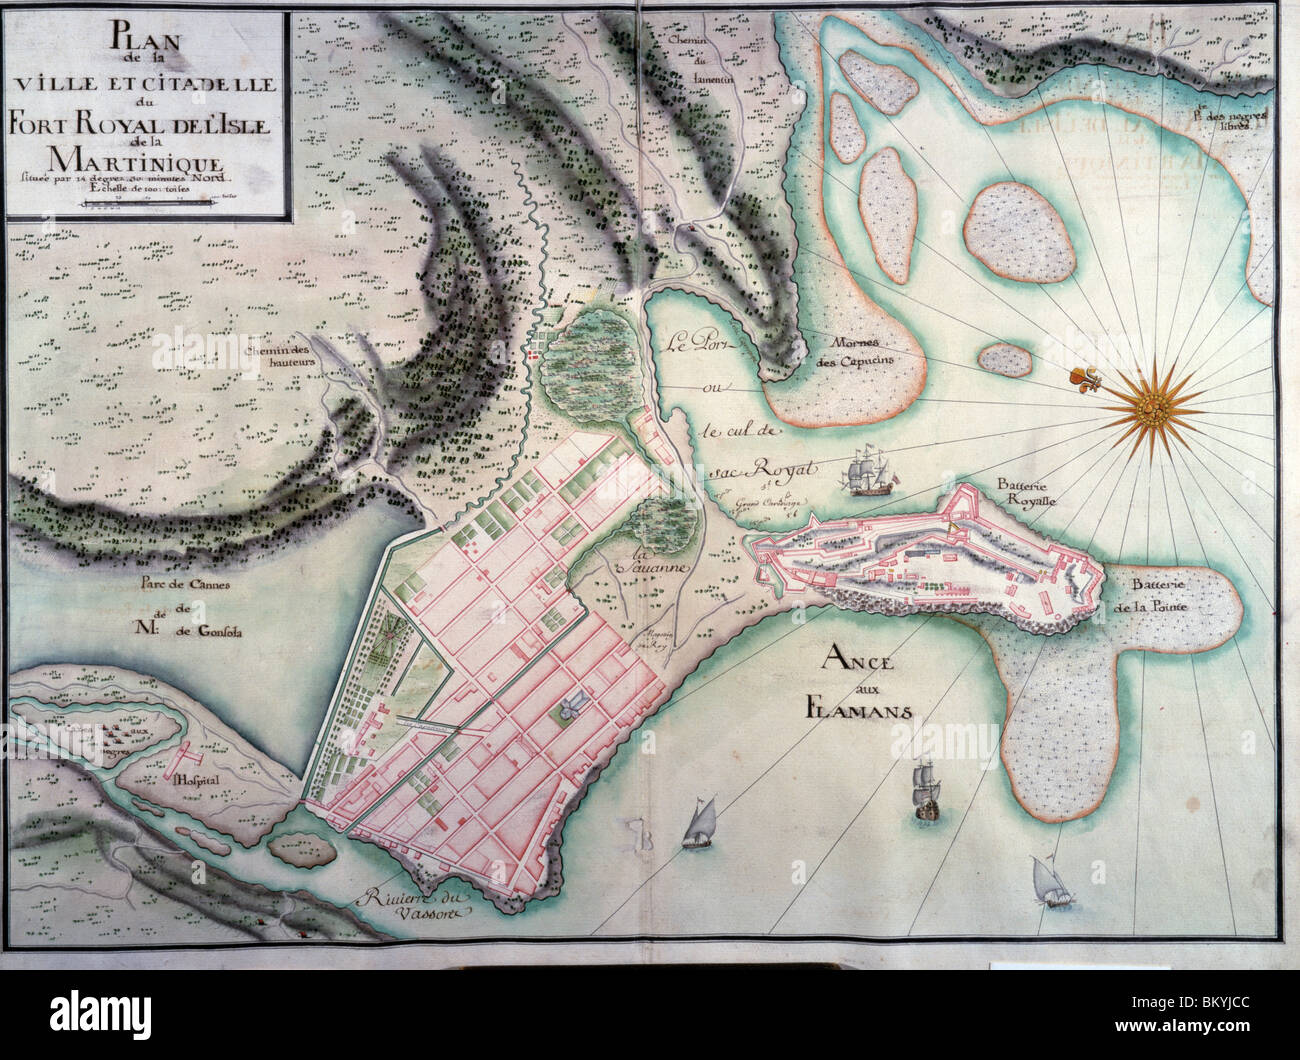 Plan de ville et forteresse de port royal de la Martinique, carte, USA, Chicago, Newberry Library Banque D'Images